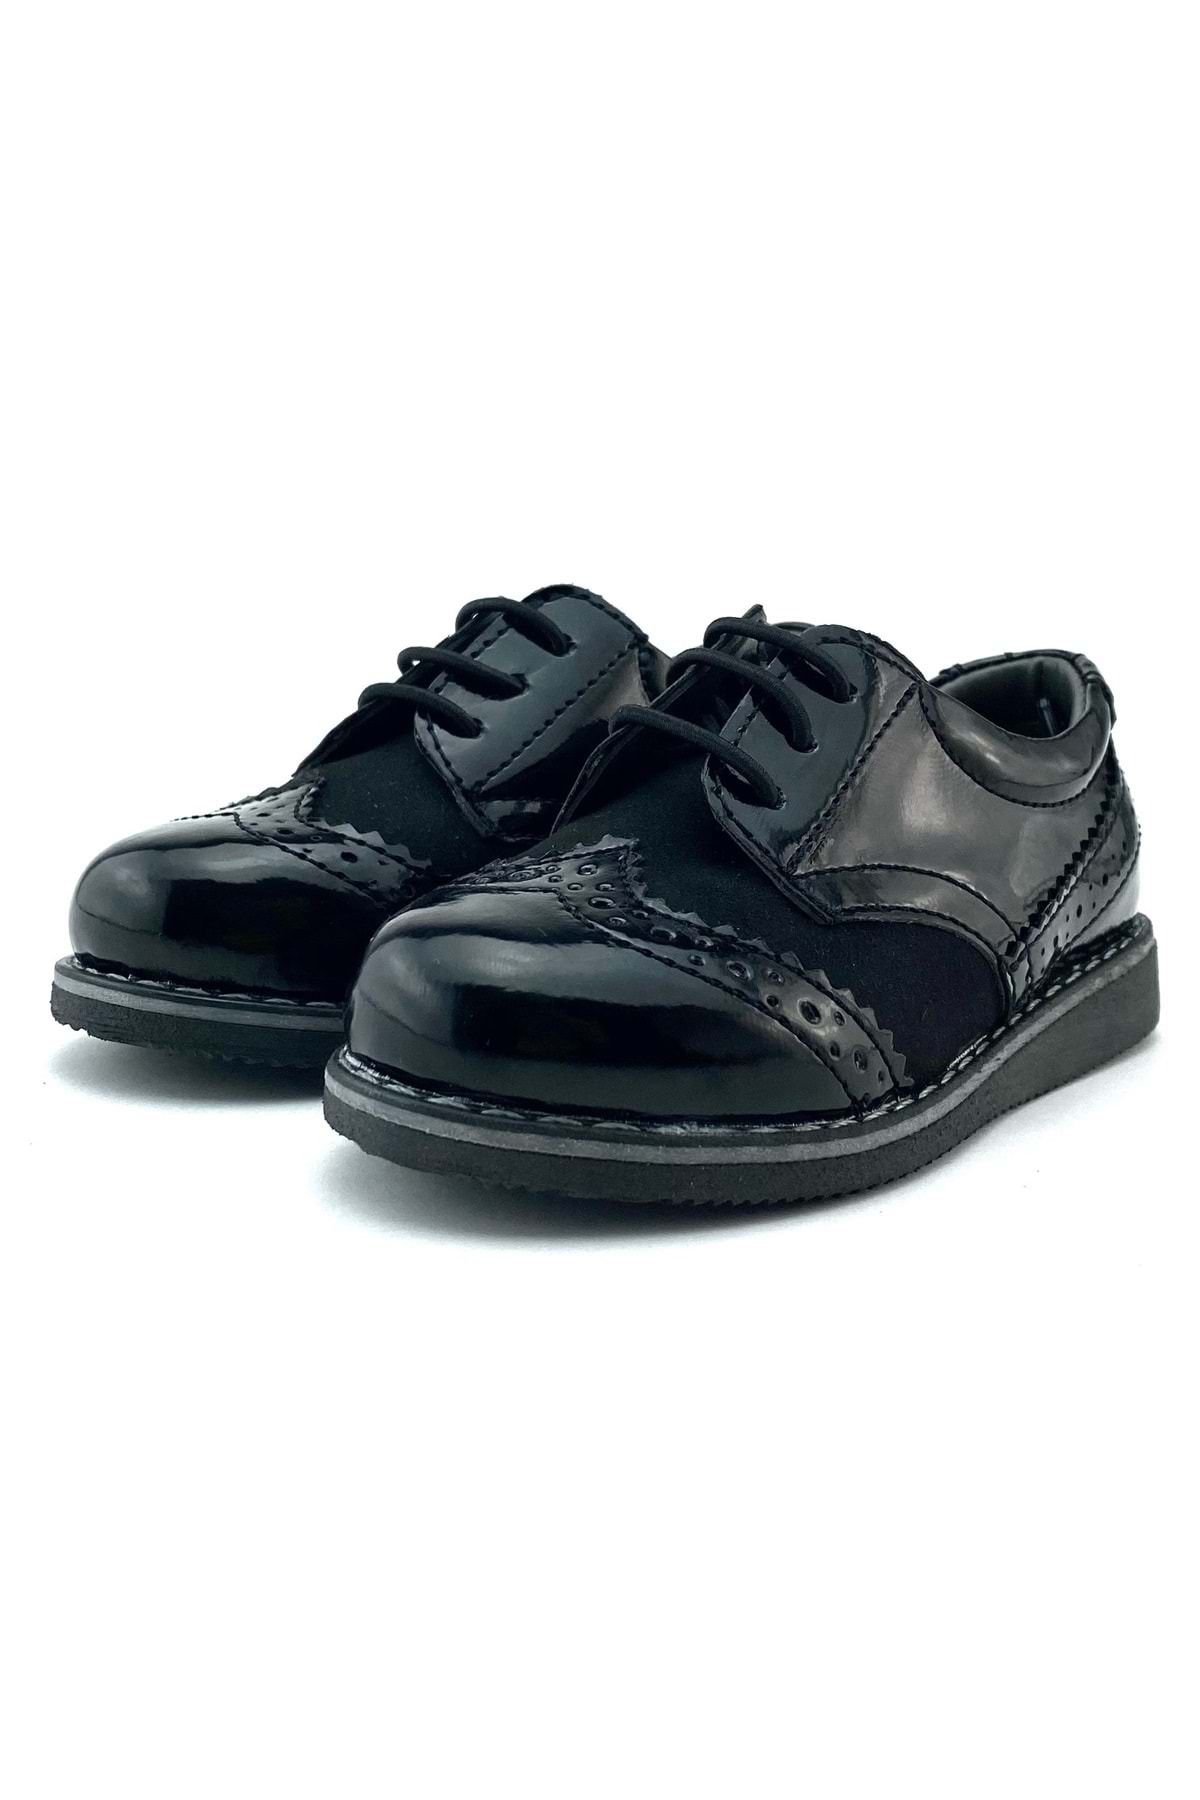 Mnk Erkek Çocuk Rugan Süet Lastik Bağcıklı Klasik Ayakkabı Siyah